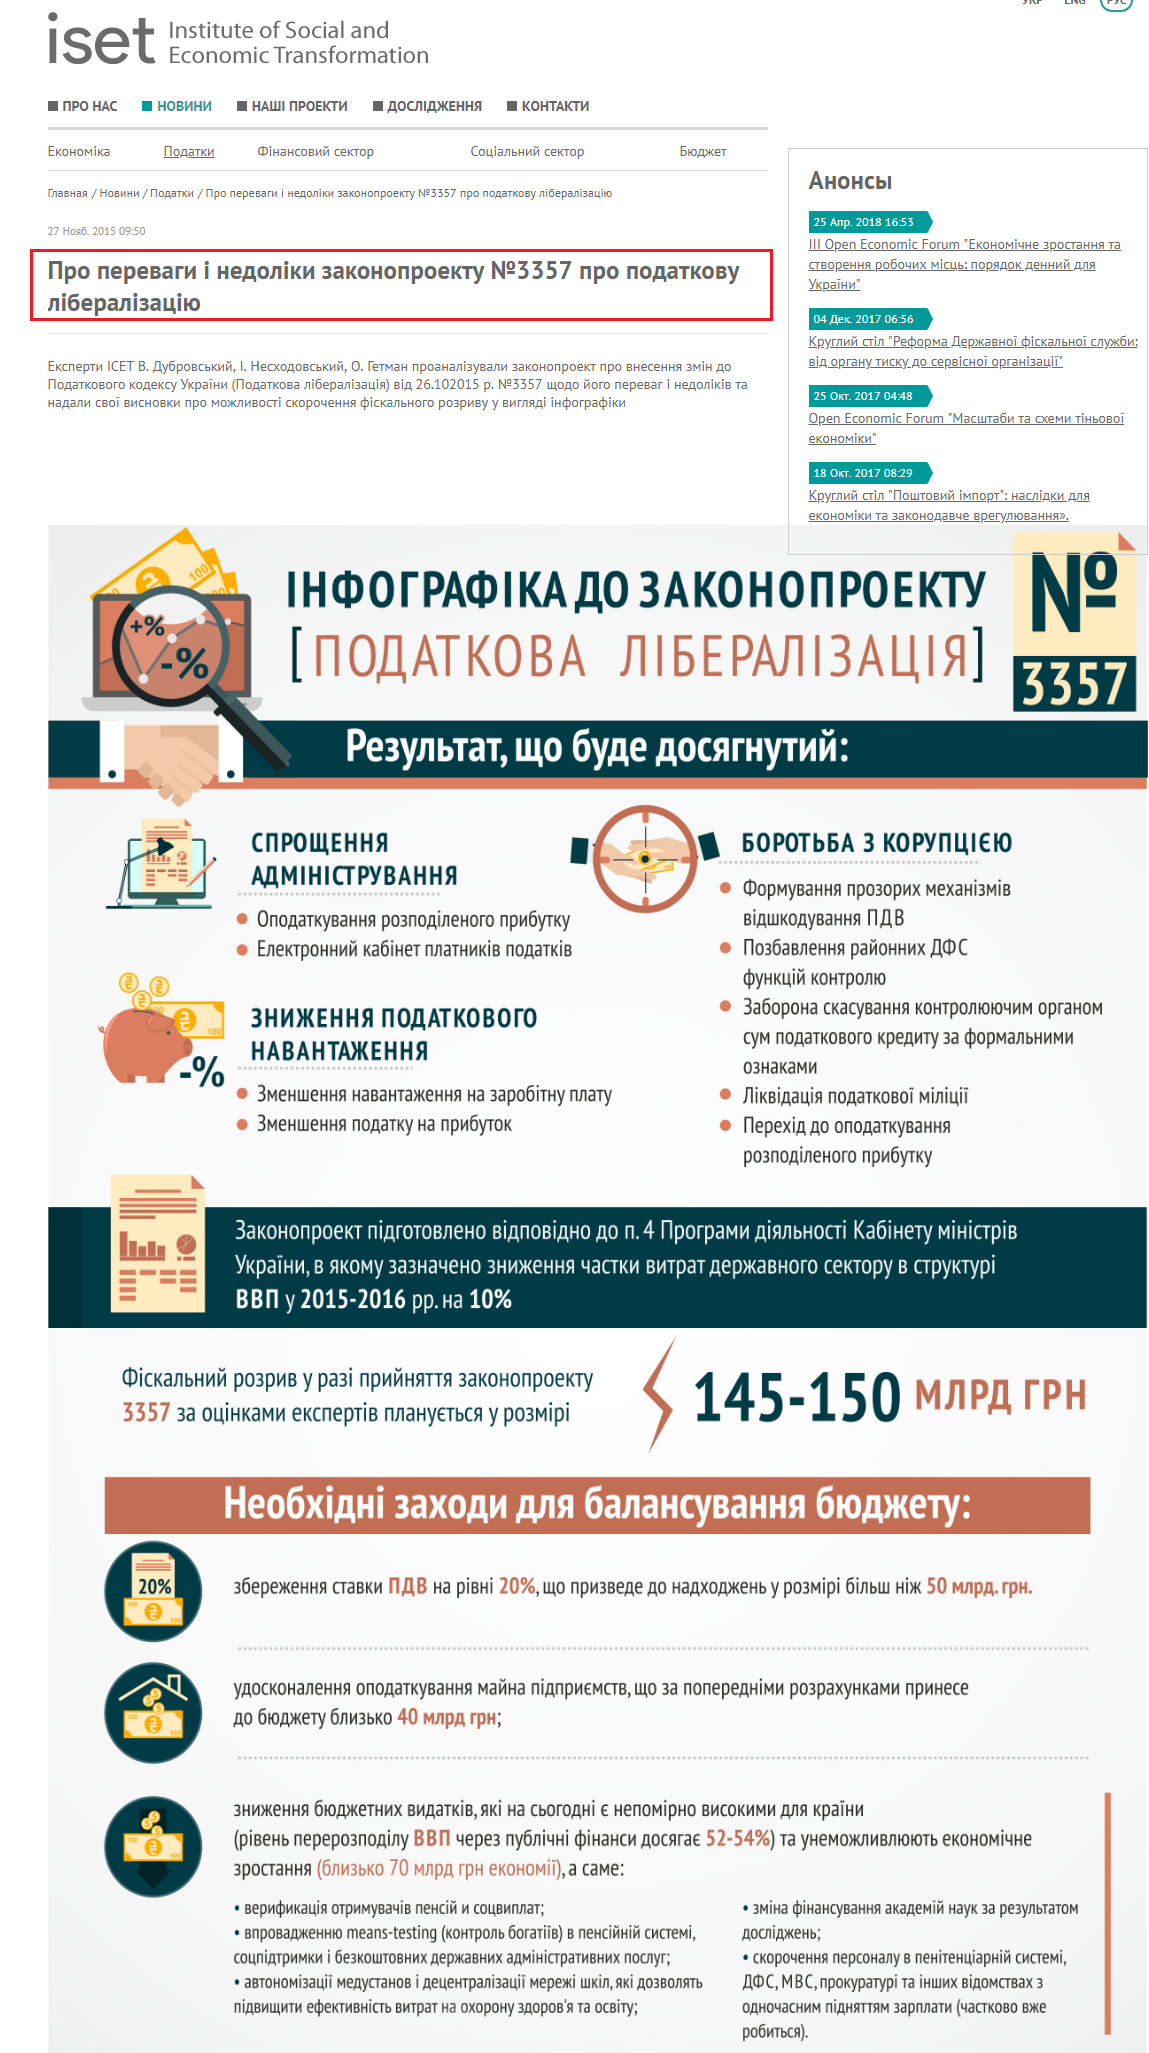 http://iset-ua.org/ru/novini/podatki/item/41-3357-infografika